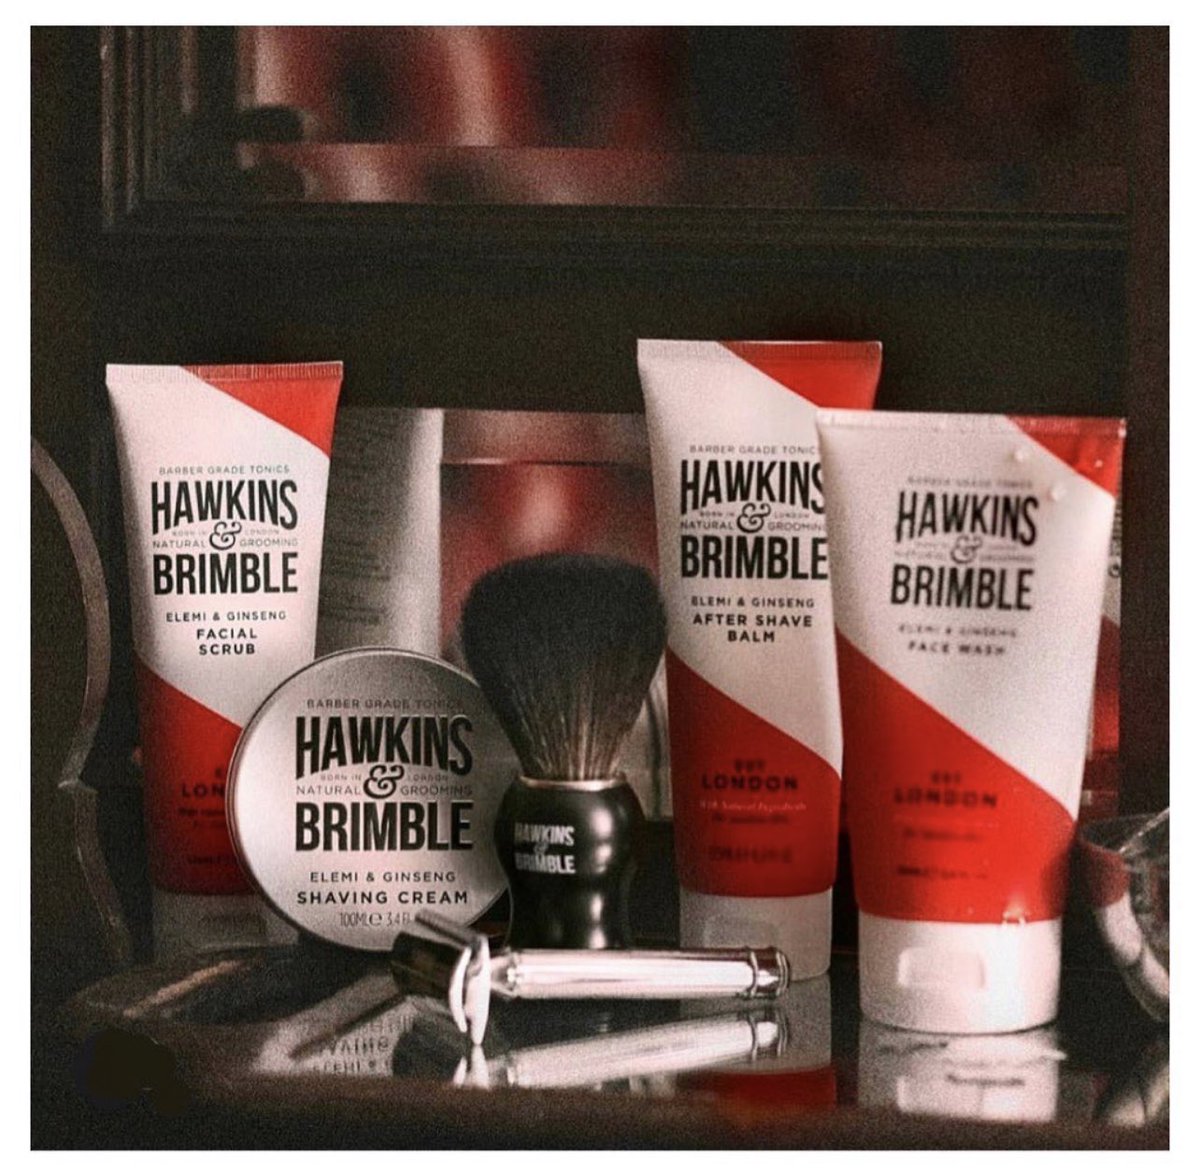 Όταν βλέπετε για πρώτη φορά τα @Hawkins_Brimble λέτε «τι όμορφη συσκευασία», όταν το μυρίσετε «φανταστικό άρωμα» και όταν το δοκιμάσετε «δεν το αλλάζω»! 
Για όλα αυτά, σας ευχαριστούμε πολύ! 
.
#HawkinsAndBrimblegr #MenProducts #MensGrooming #ProductsForMen  #OneBeautygr